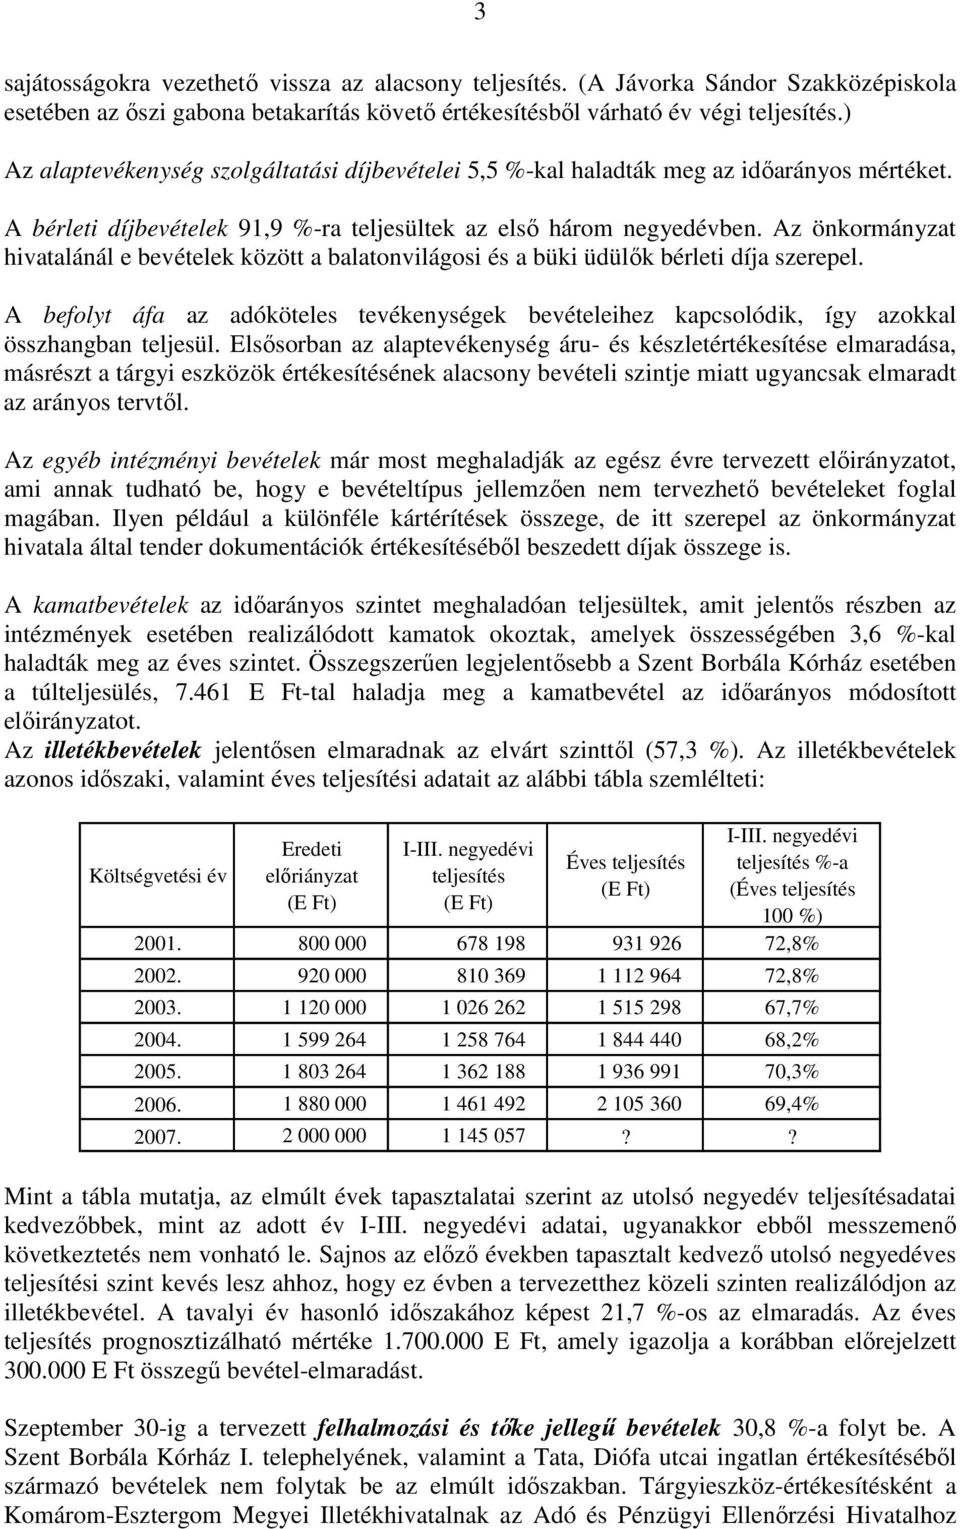 Az önkormányzat hivatalánál e bevételek között a balatonvilágosi és a büki üdülık bérleti díja szerepel.